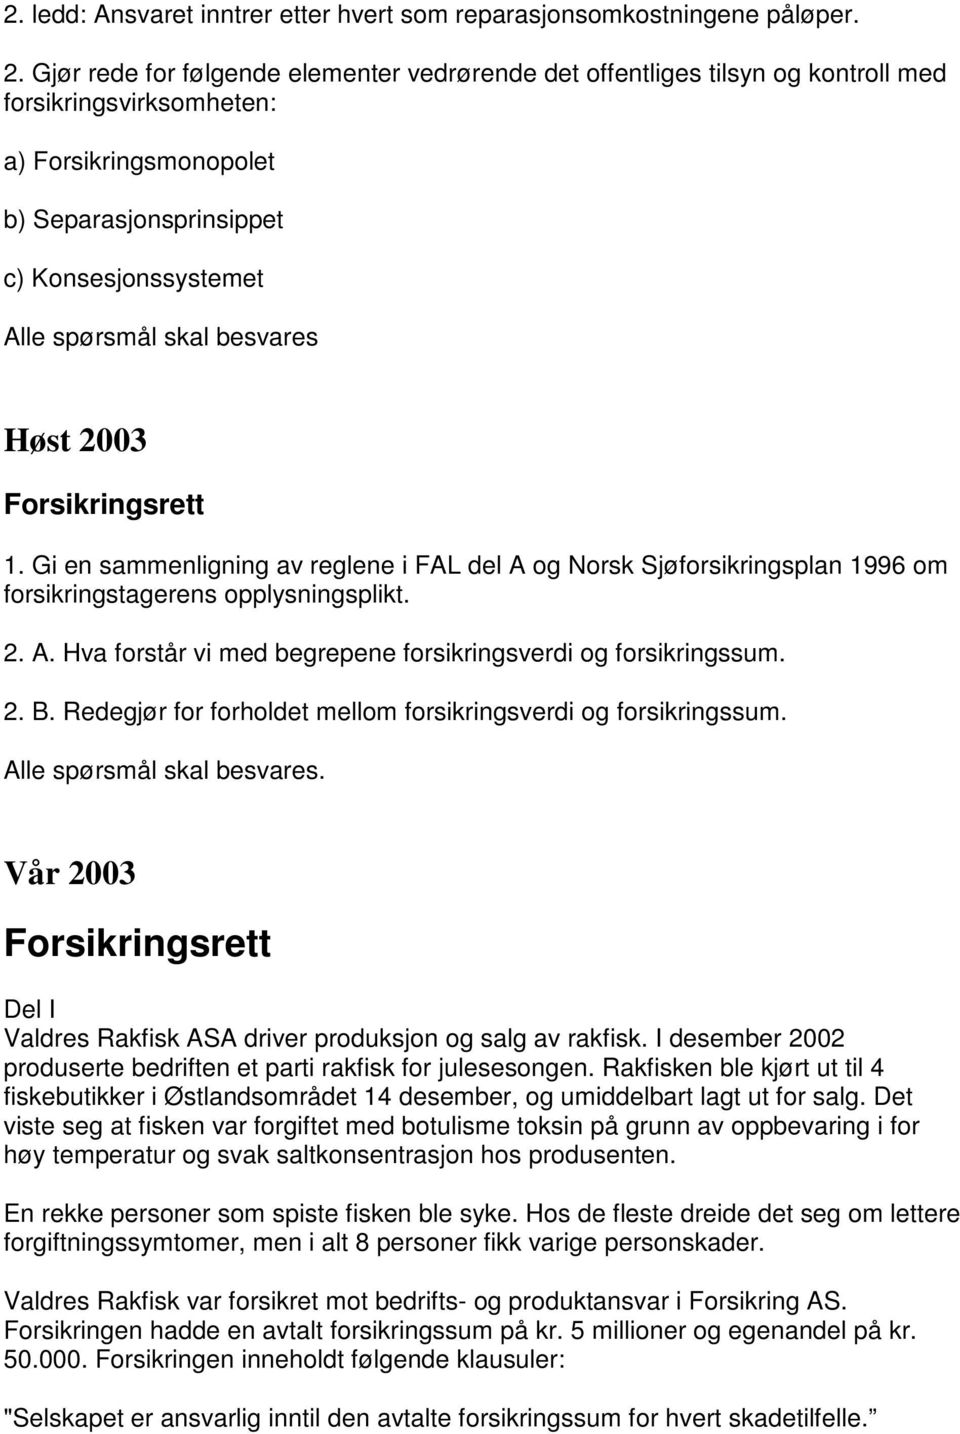 besvares Høst 2003 Forsikringsrett 1. Gi en sammenligning av reglene i FAL del A og Norsk Sjøforsikringsplan 1996 om forsikringstagerens opplysningsplikt. 2. A. Hva forstår vi med begrepene forsikringsverdi og forsikringssum.